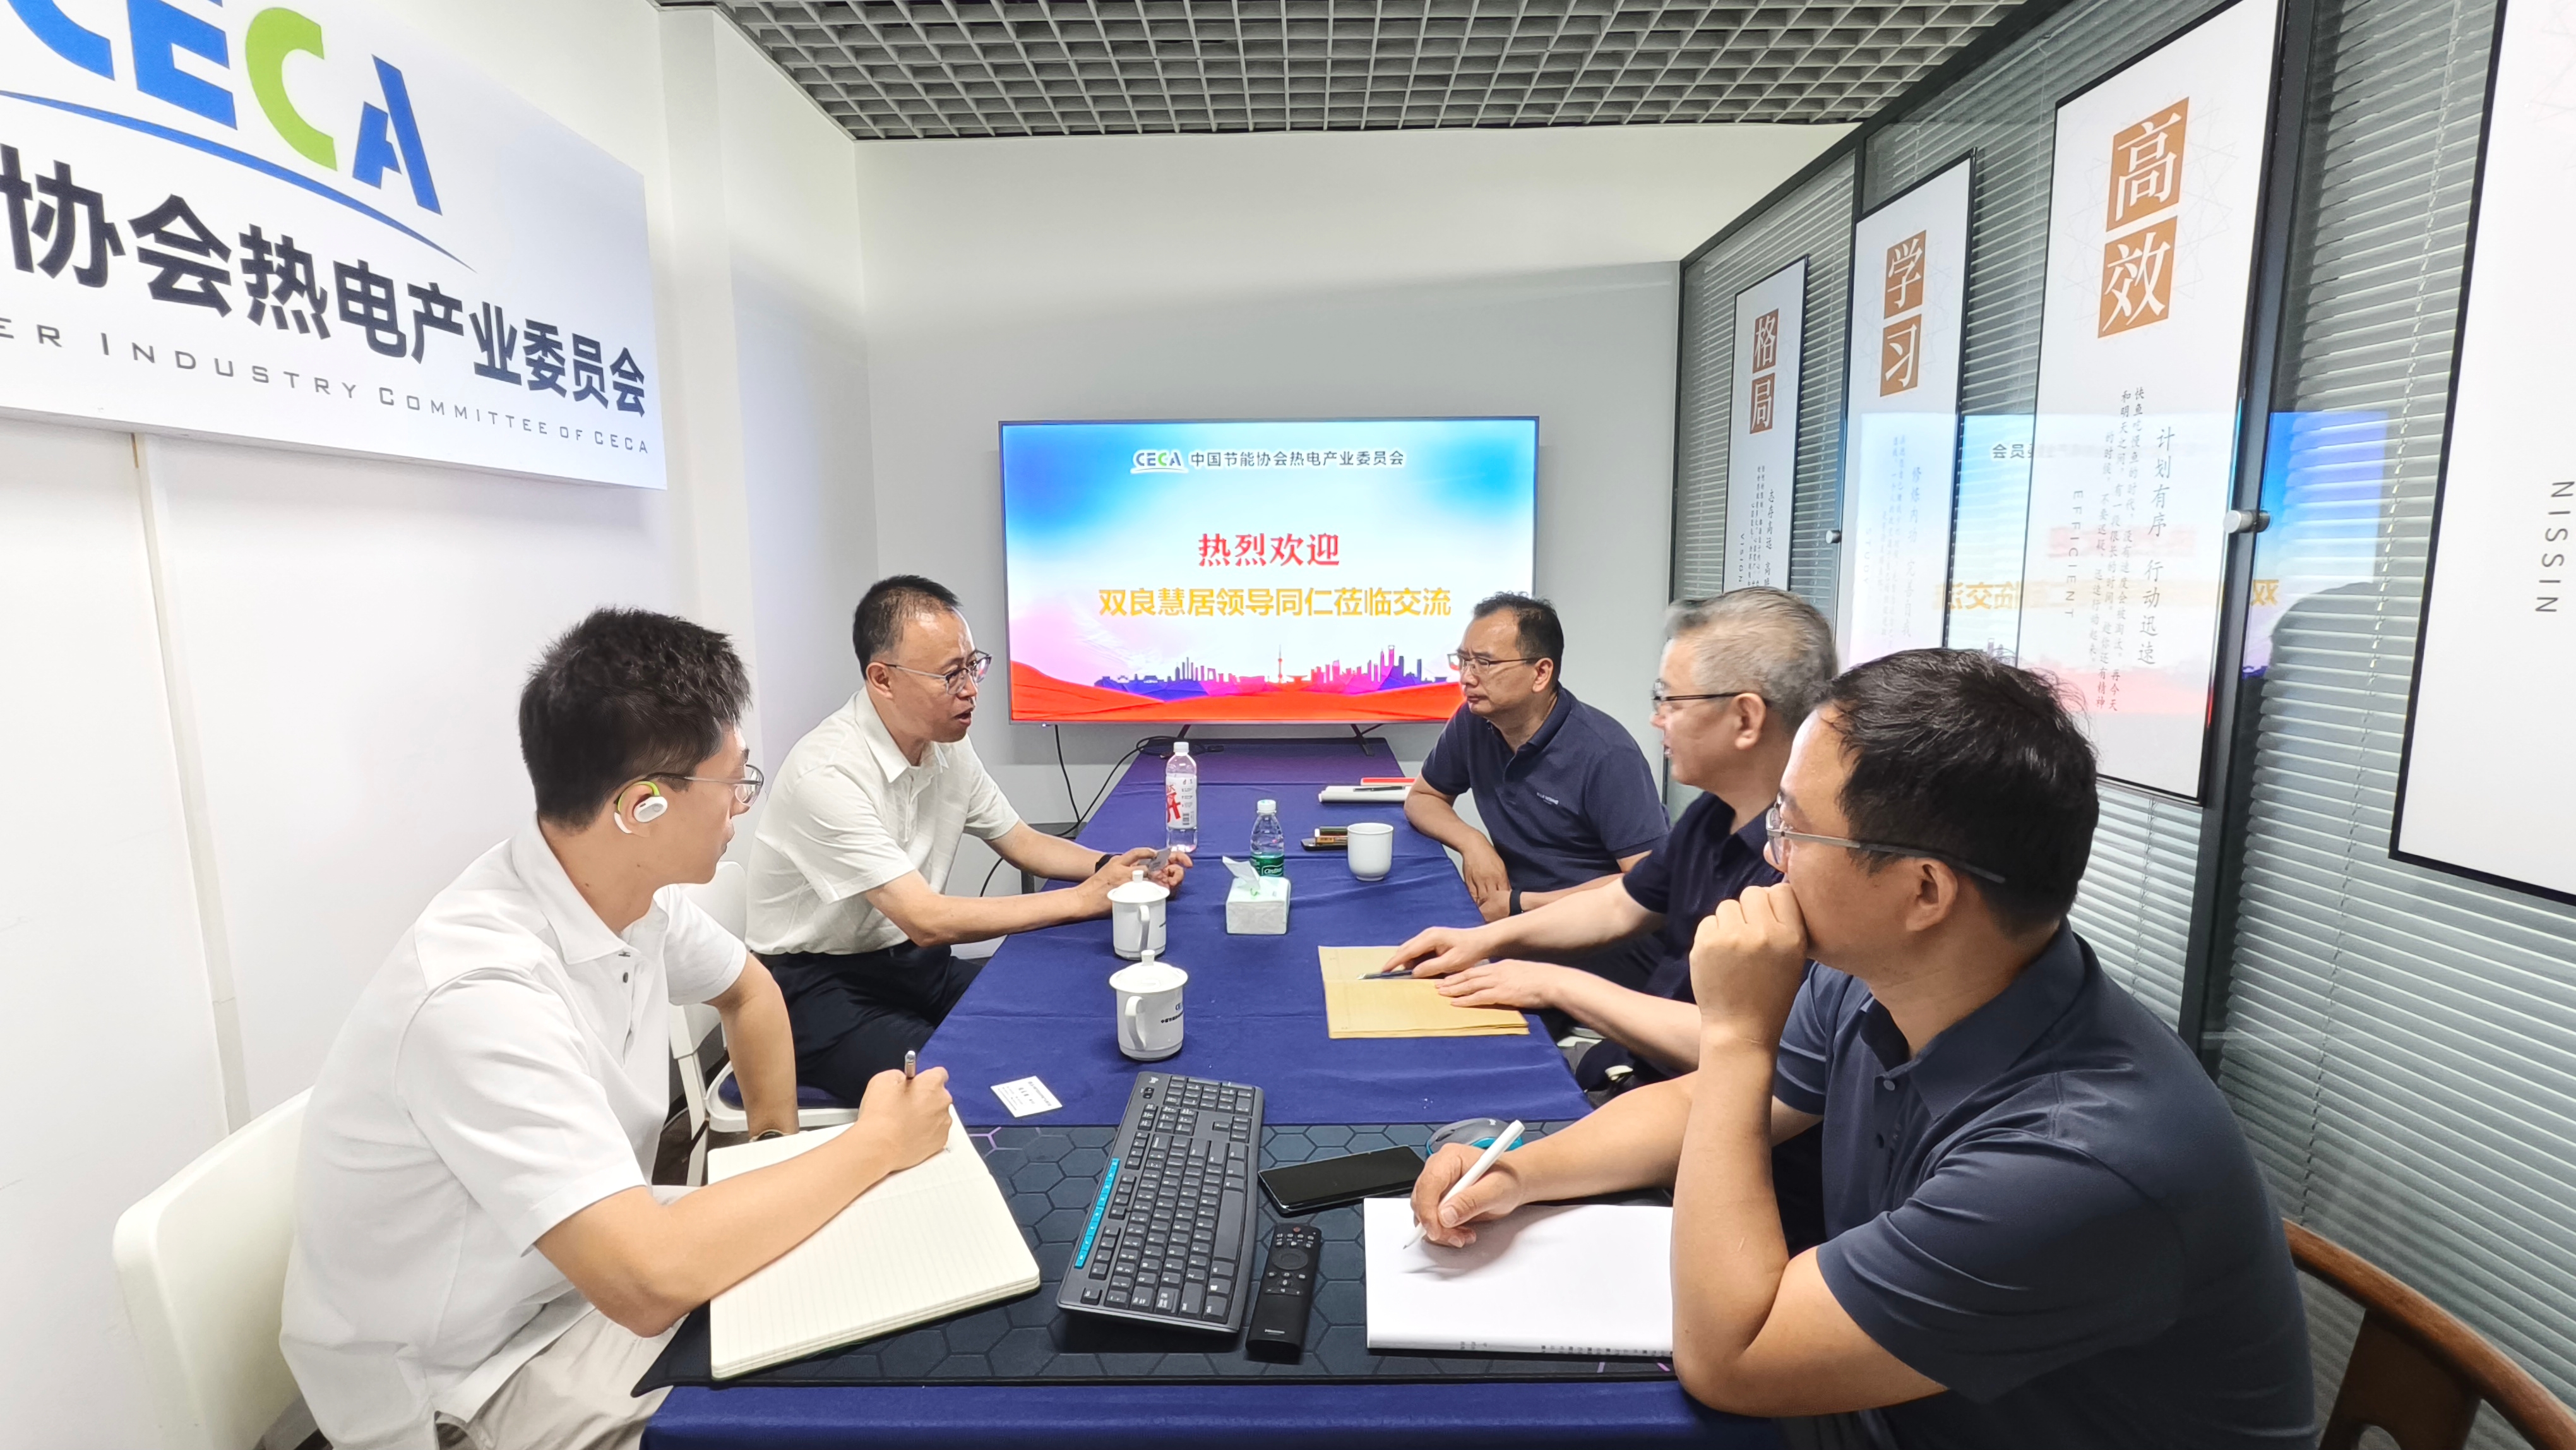 慧居科技副总裁胡锡荣来访热电产业委员会